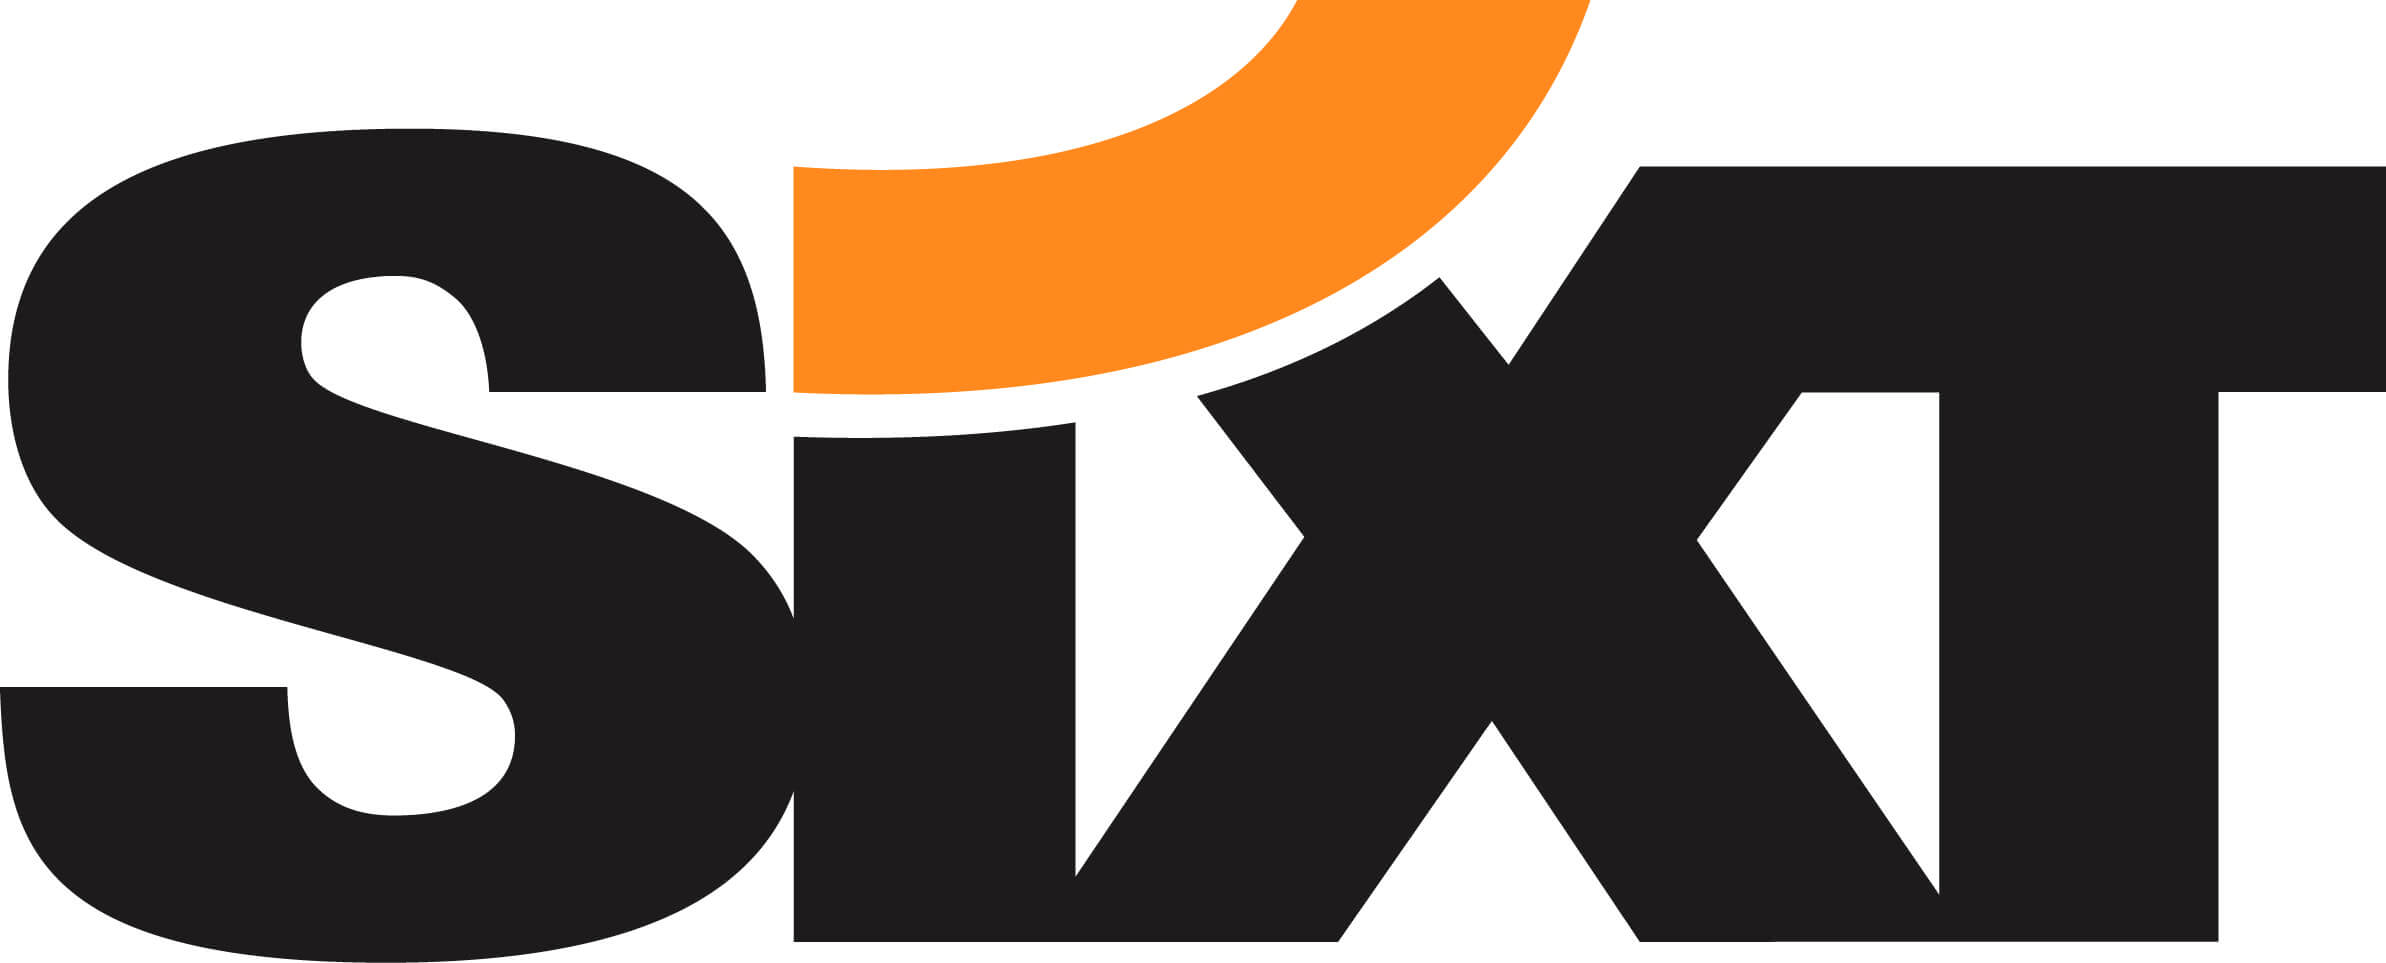 Das Logozeigt den Firmennamen SIXT in schwarzer Schrift mit einem organgenen i-Punkt.